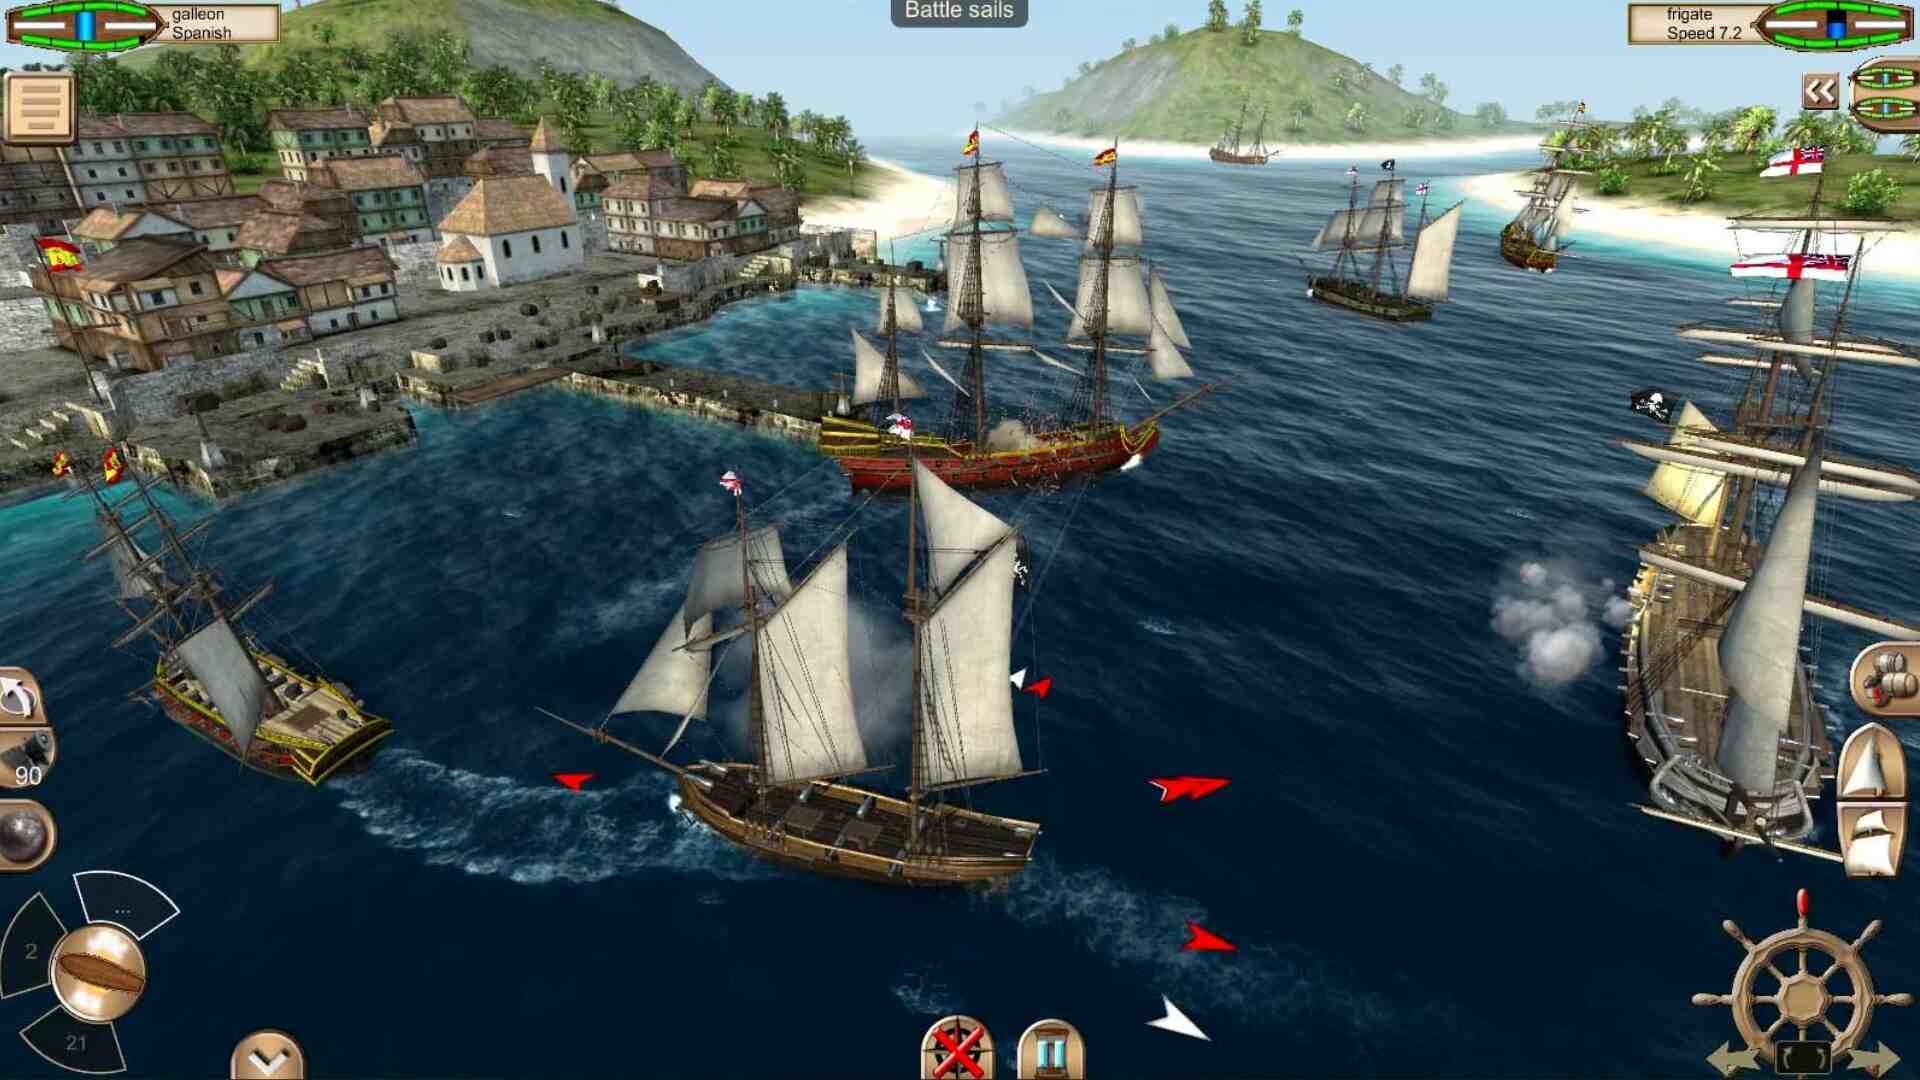 Как убрать игры пиратов